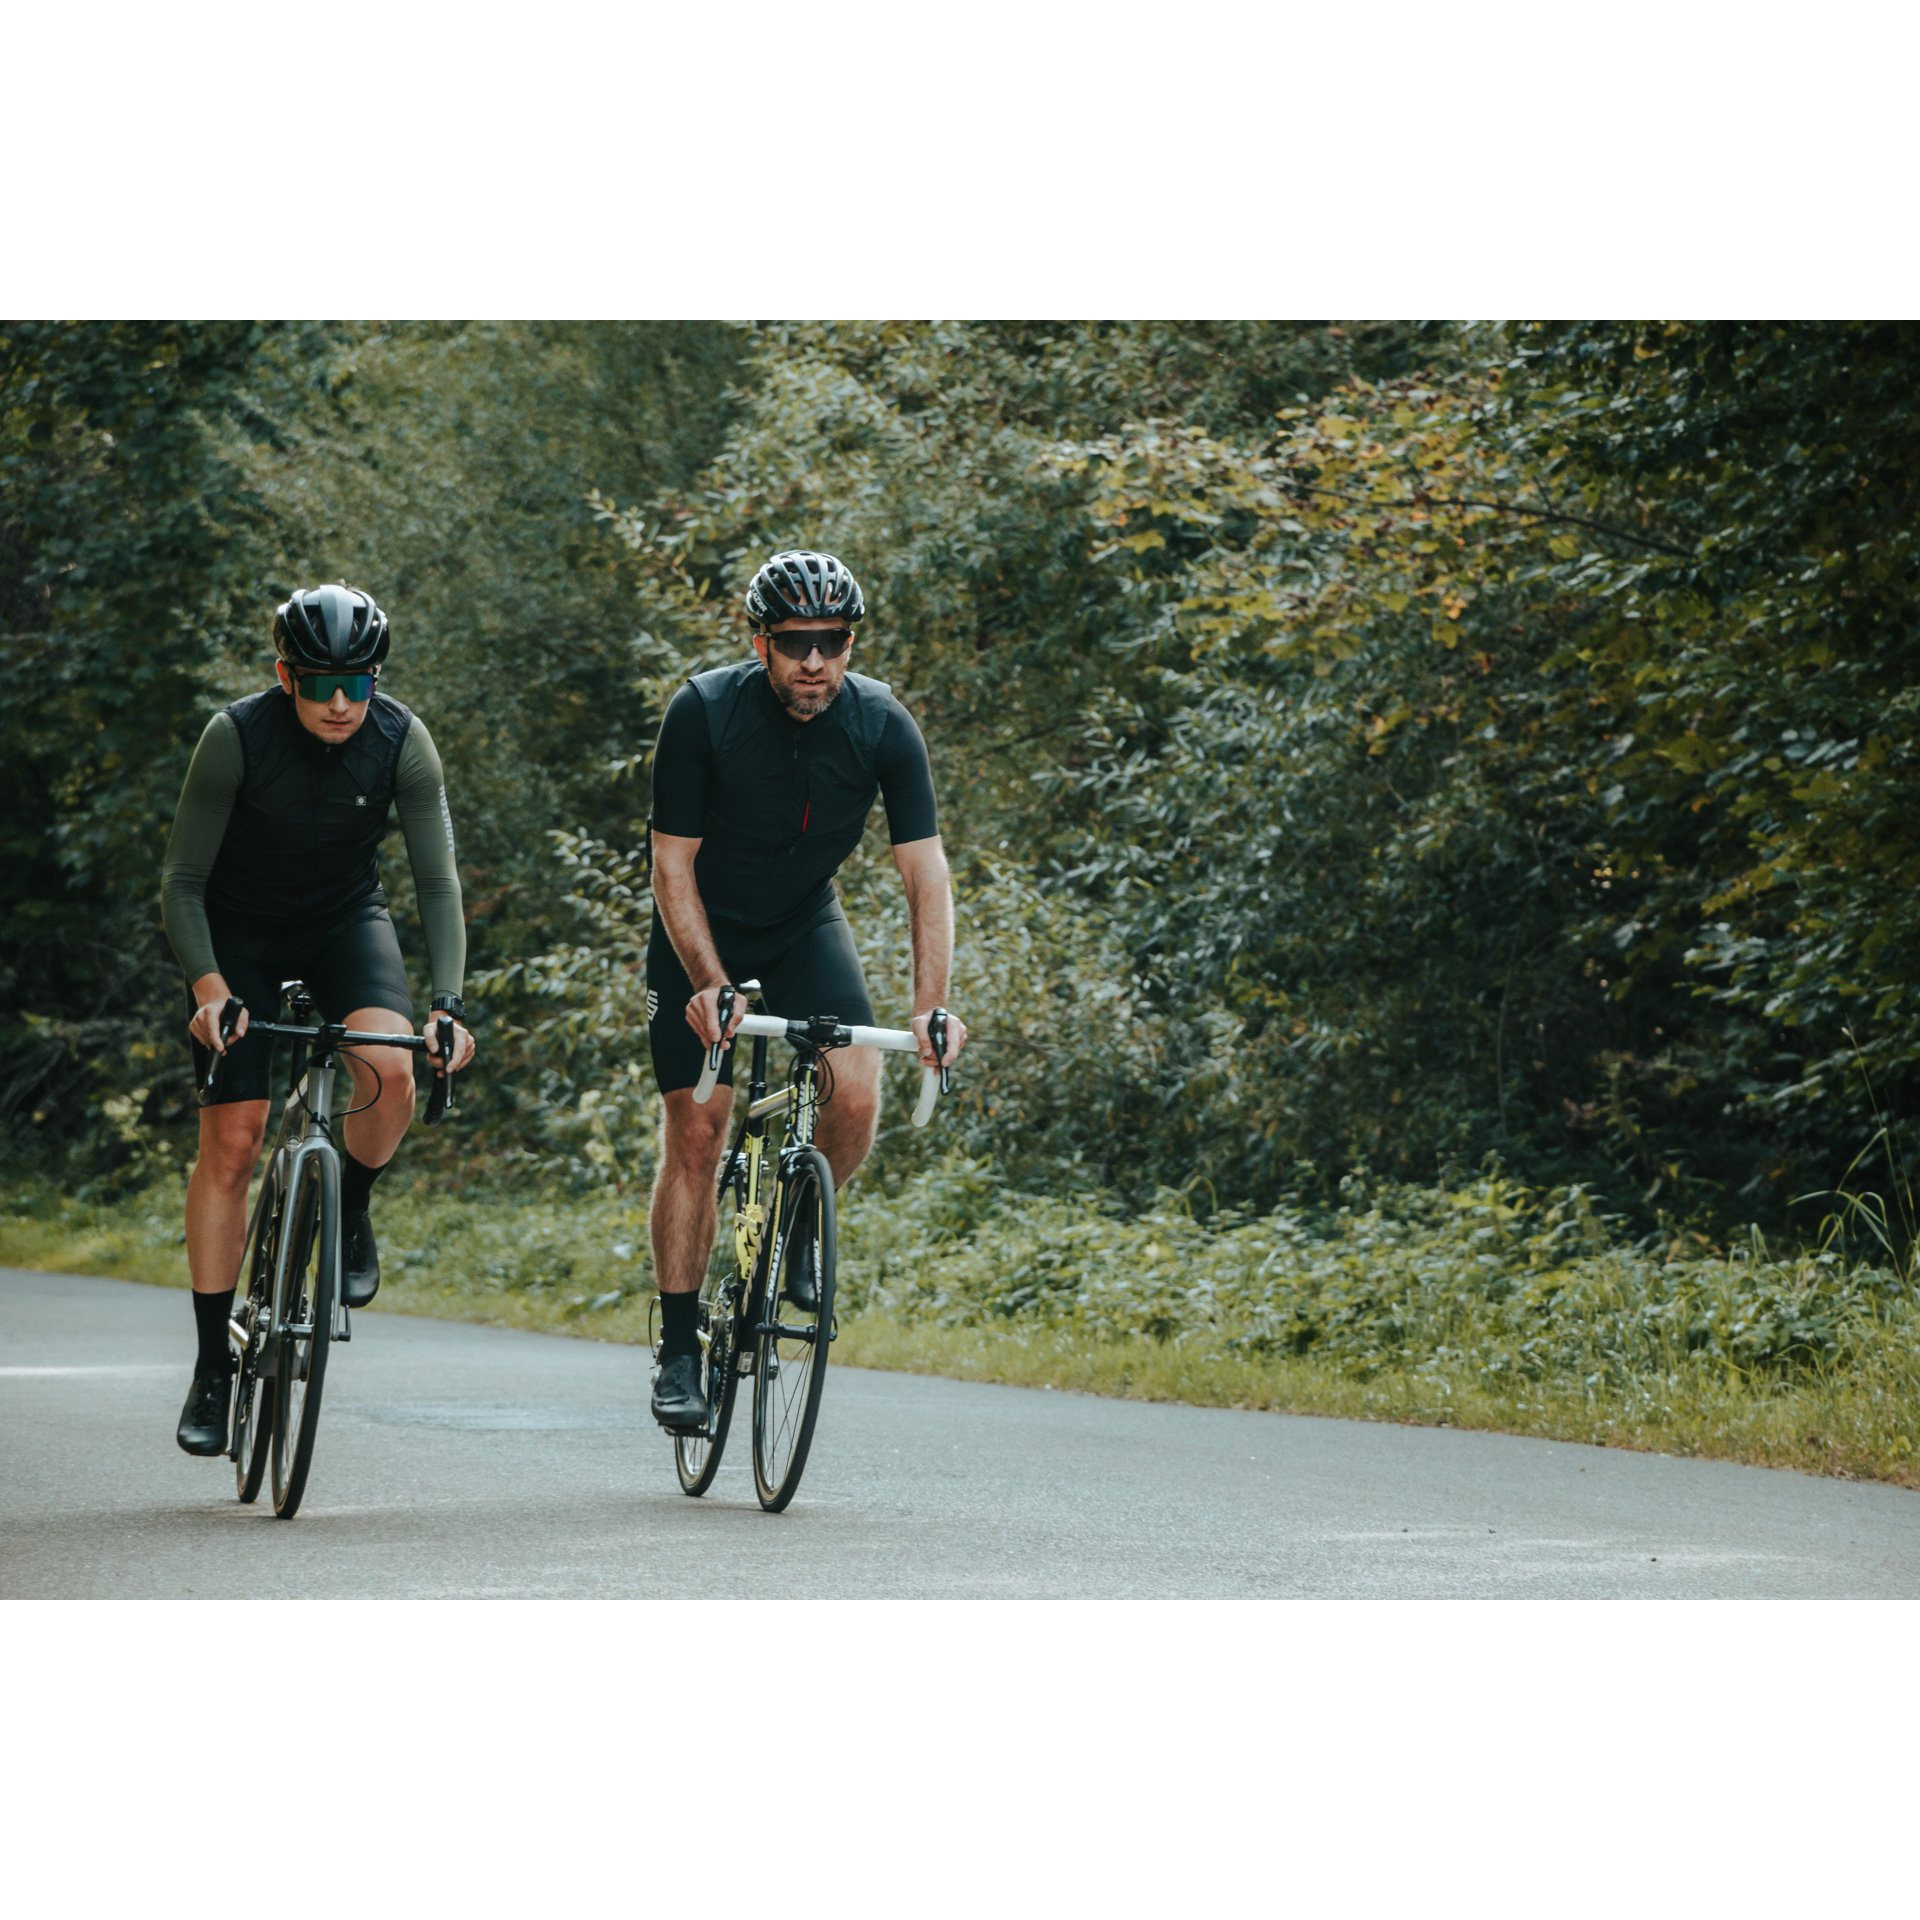 Dwóch rowerzystów w czarnych strojach kolarskich, ciemnych okularach i kaskach jadących na rowerach drogą asfaltową wśród zielonych drzew i krzewów